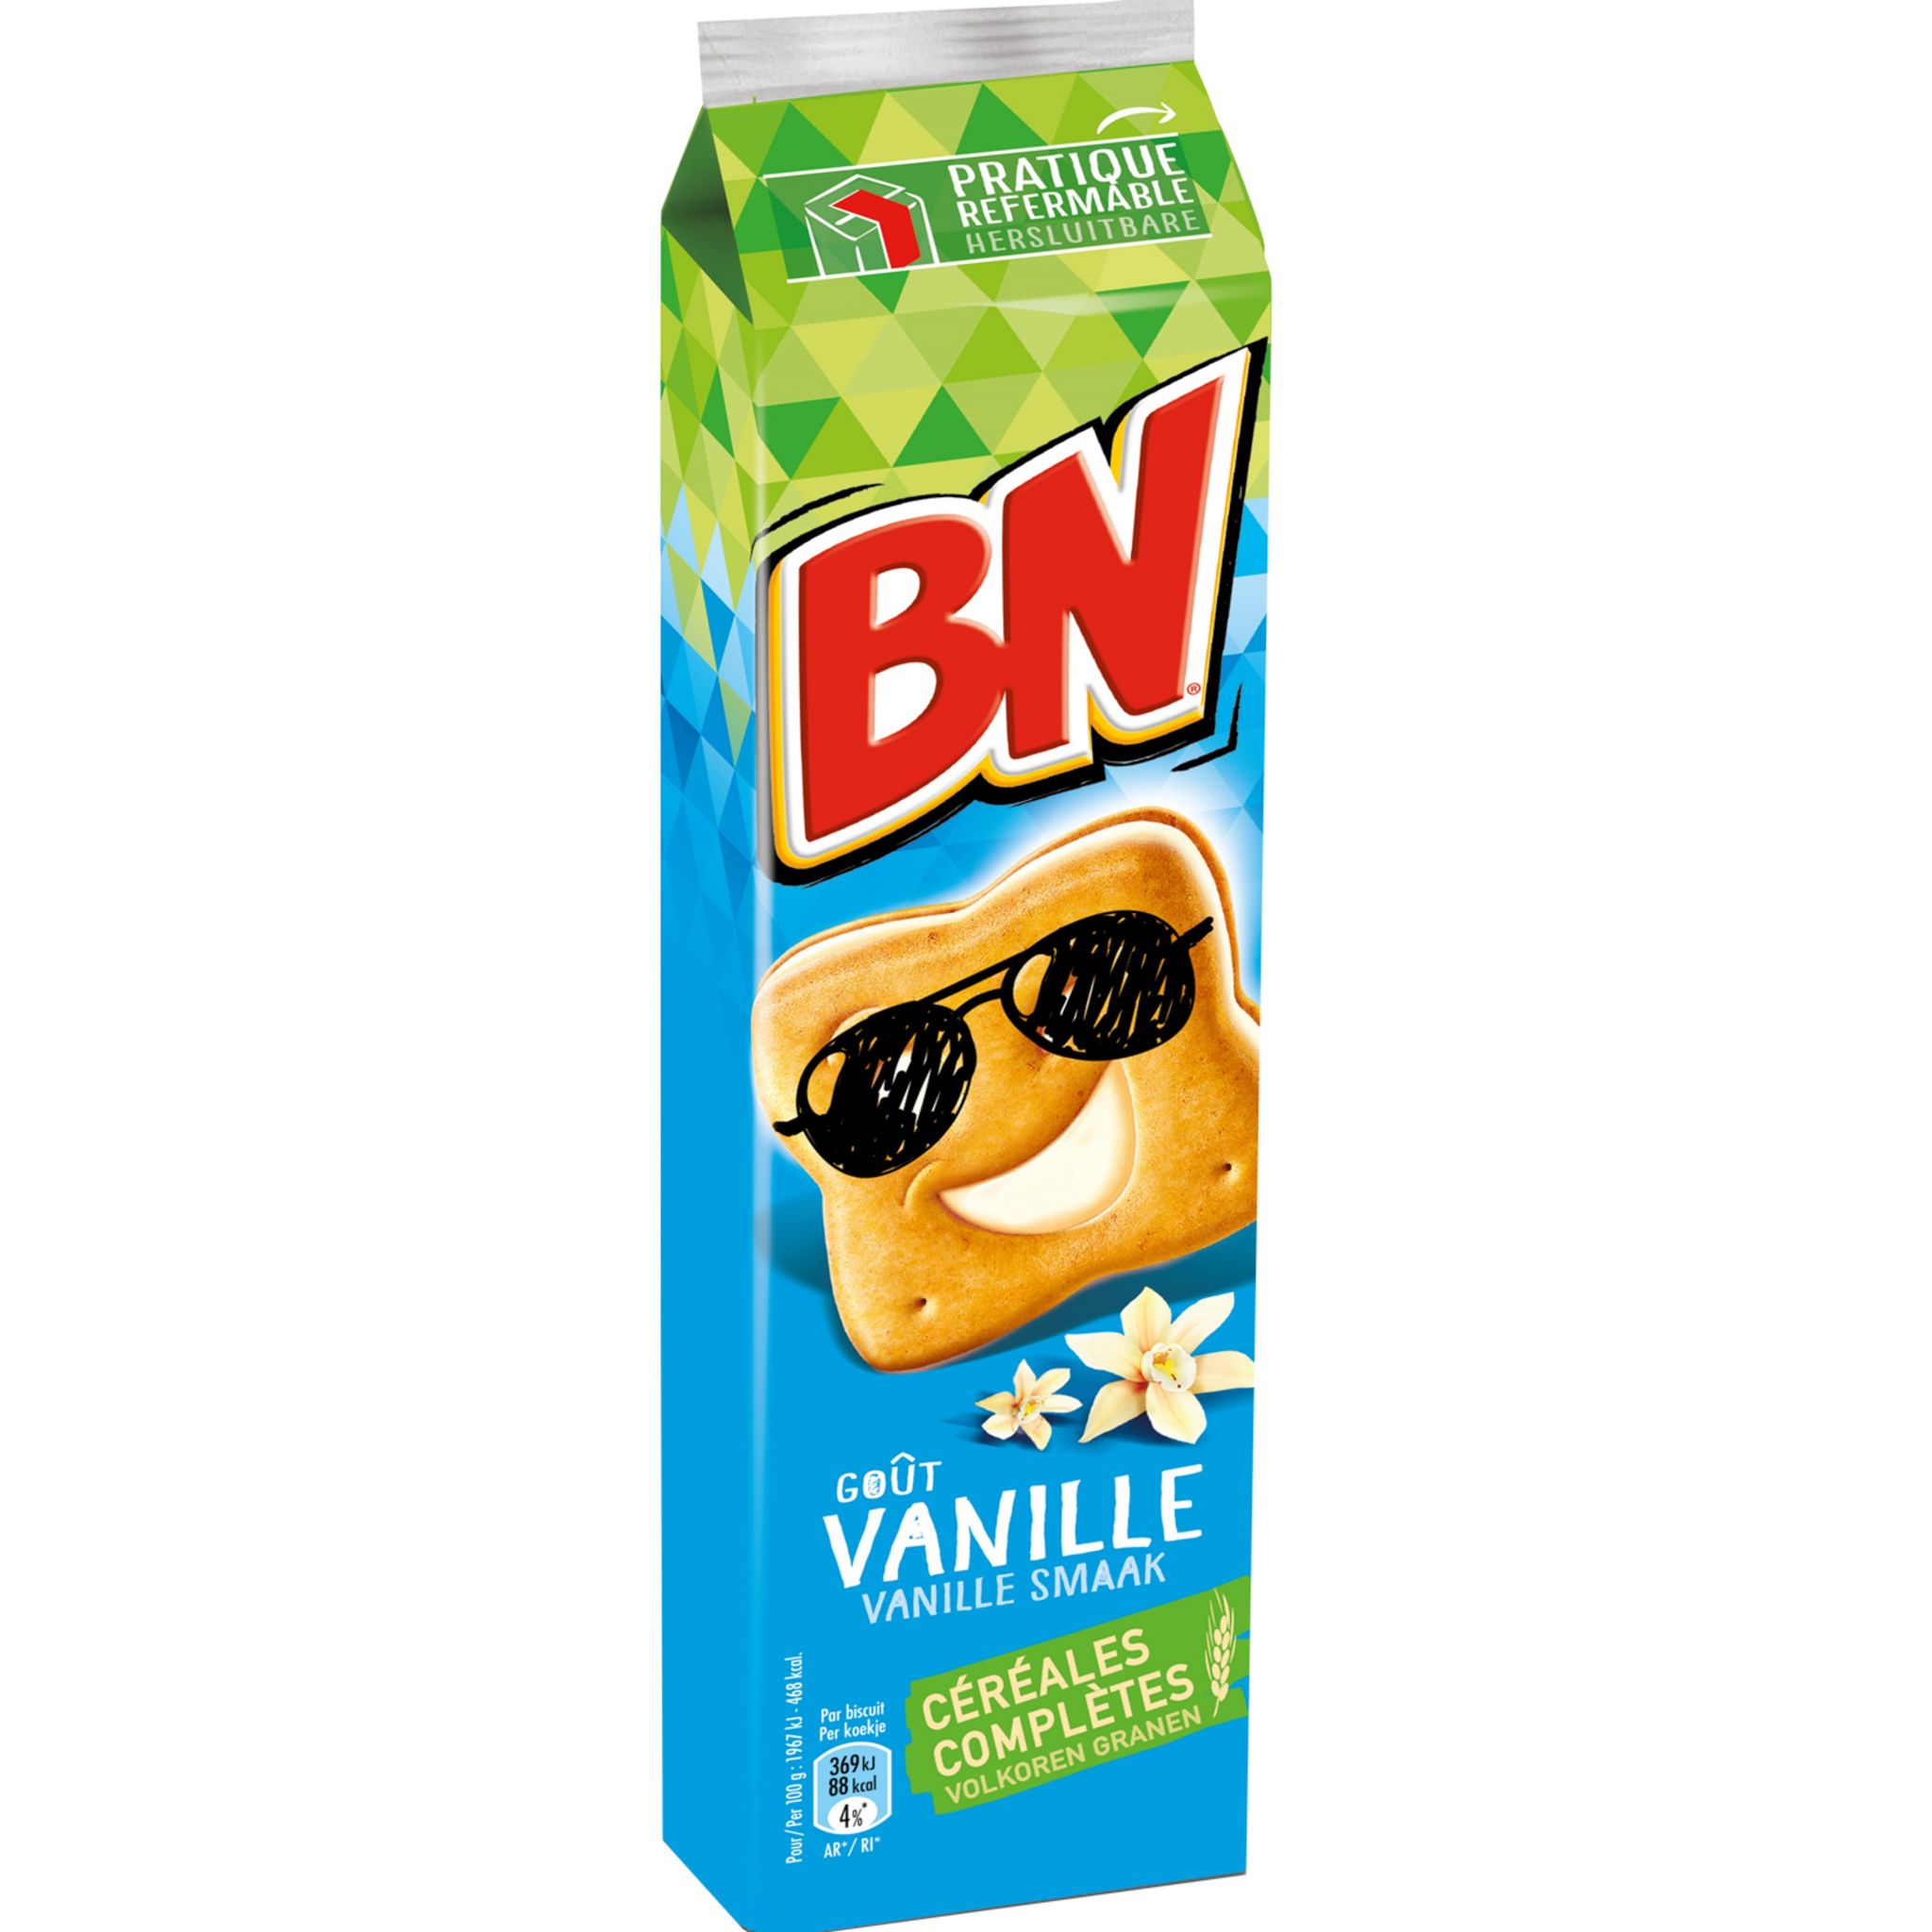 BN Biscuits fourrés goût vanille aux céréales complètes 16